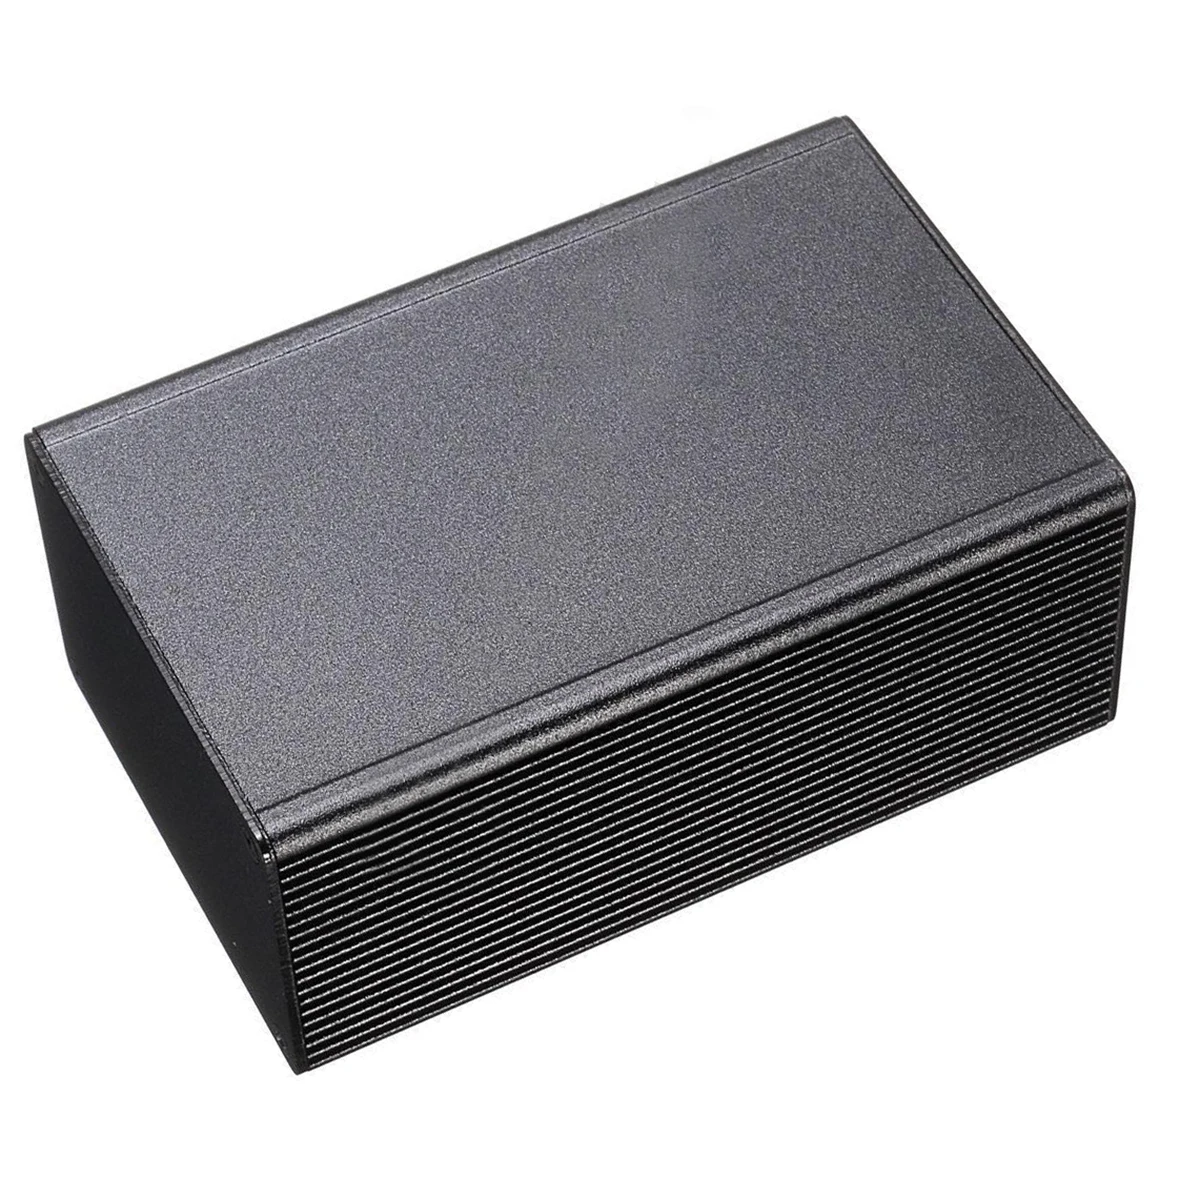 1 шт. Mayitr черный алюминиевый корпус Чехол электронный проект ящик для инструментов 100x66x43 мм